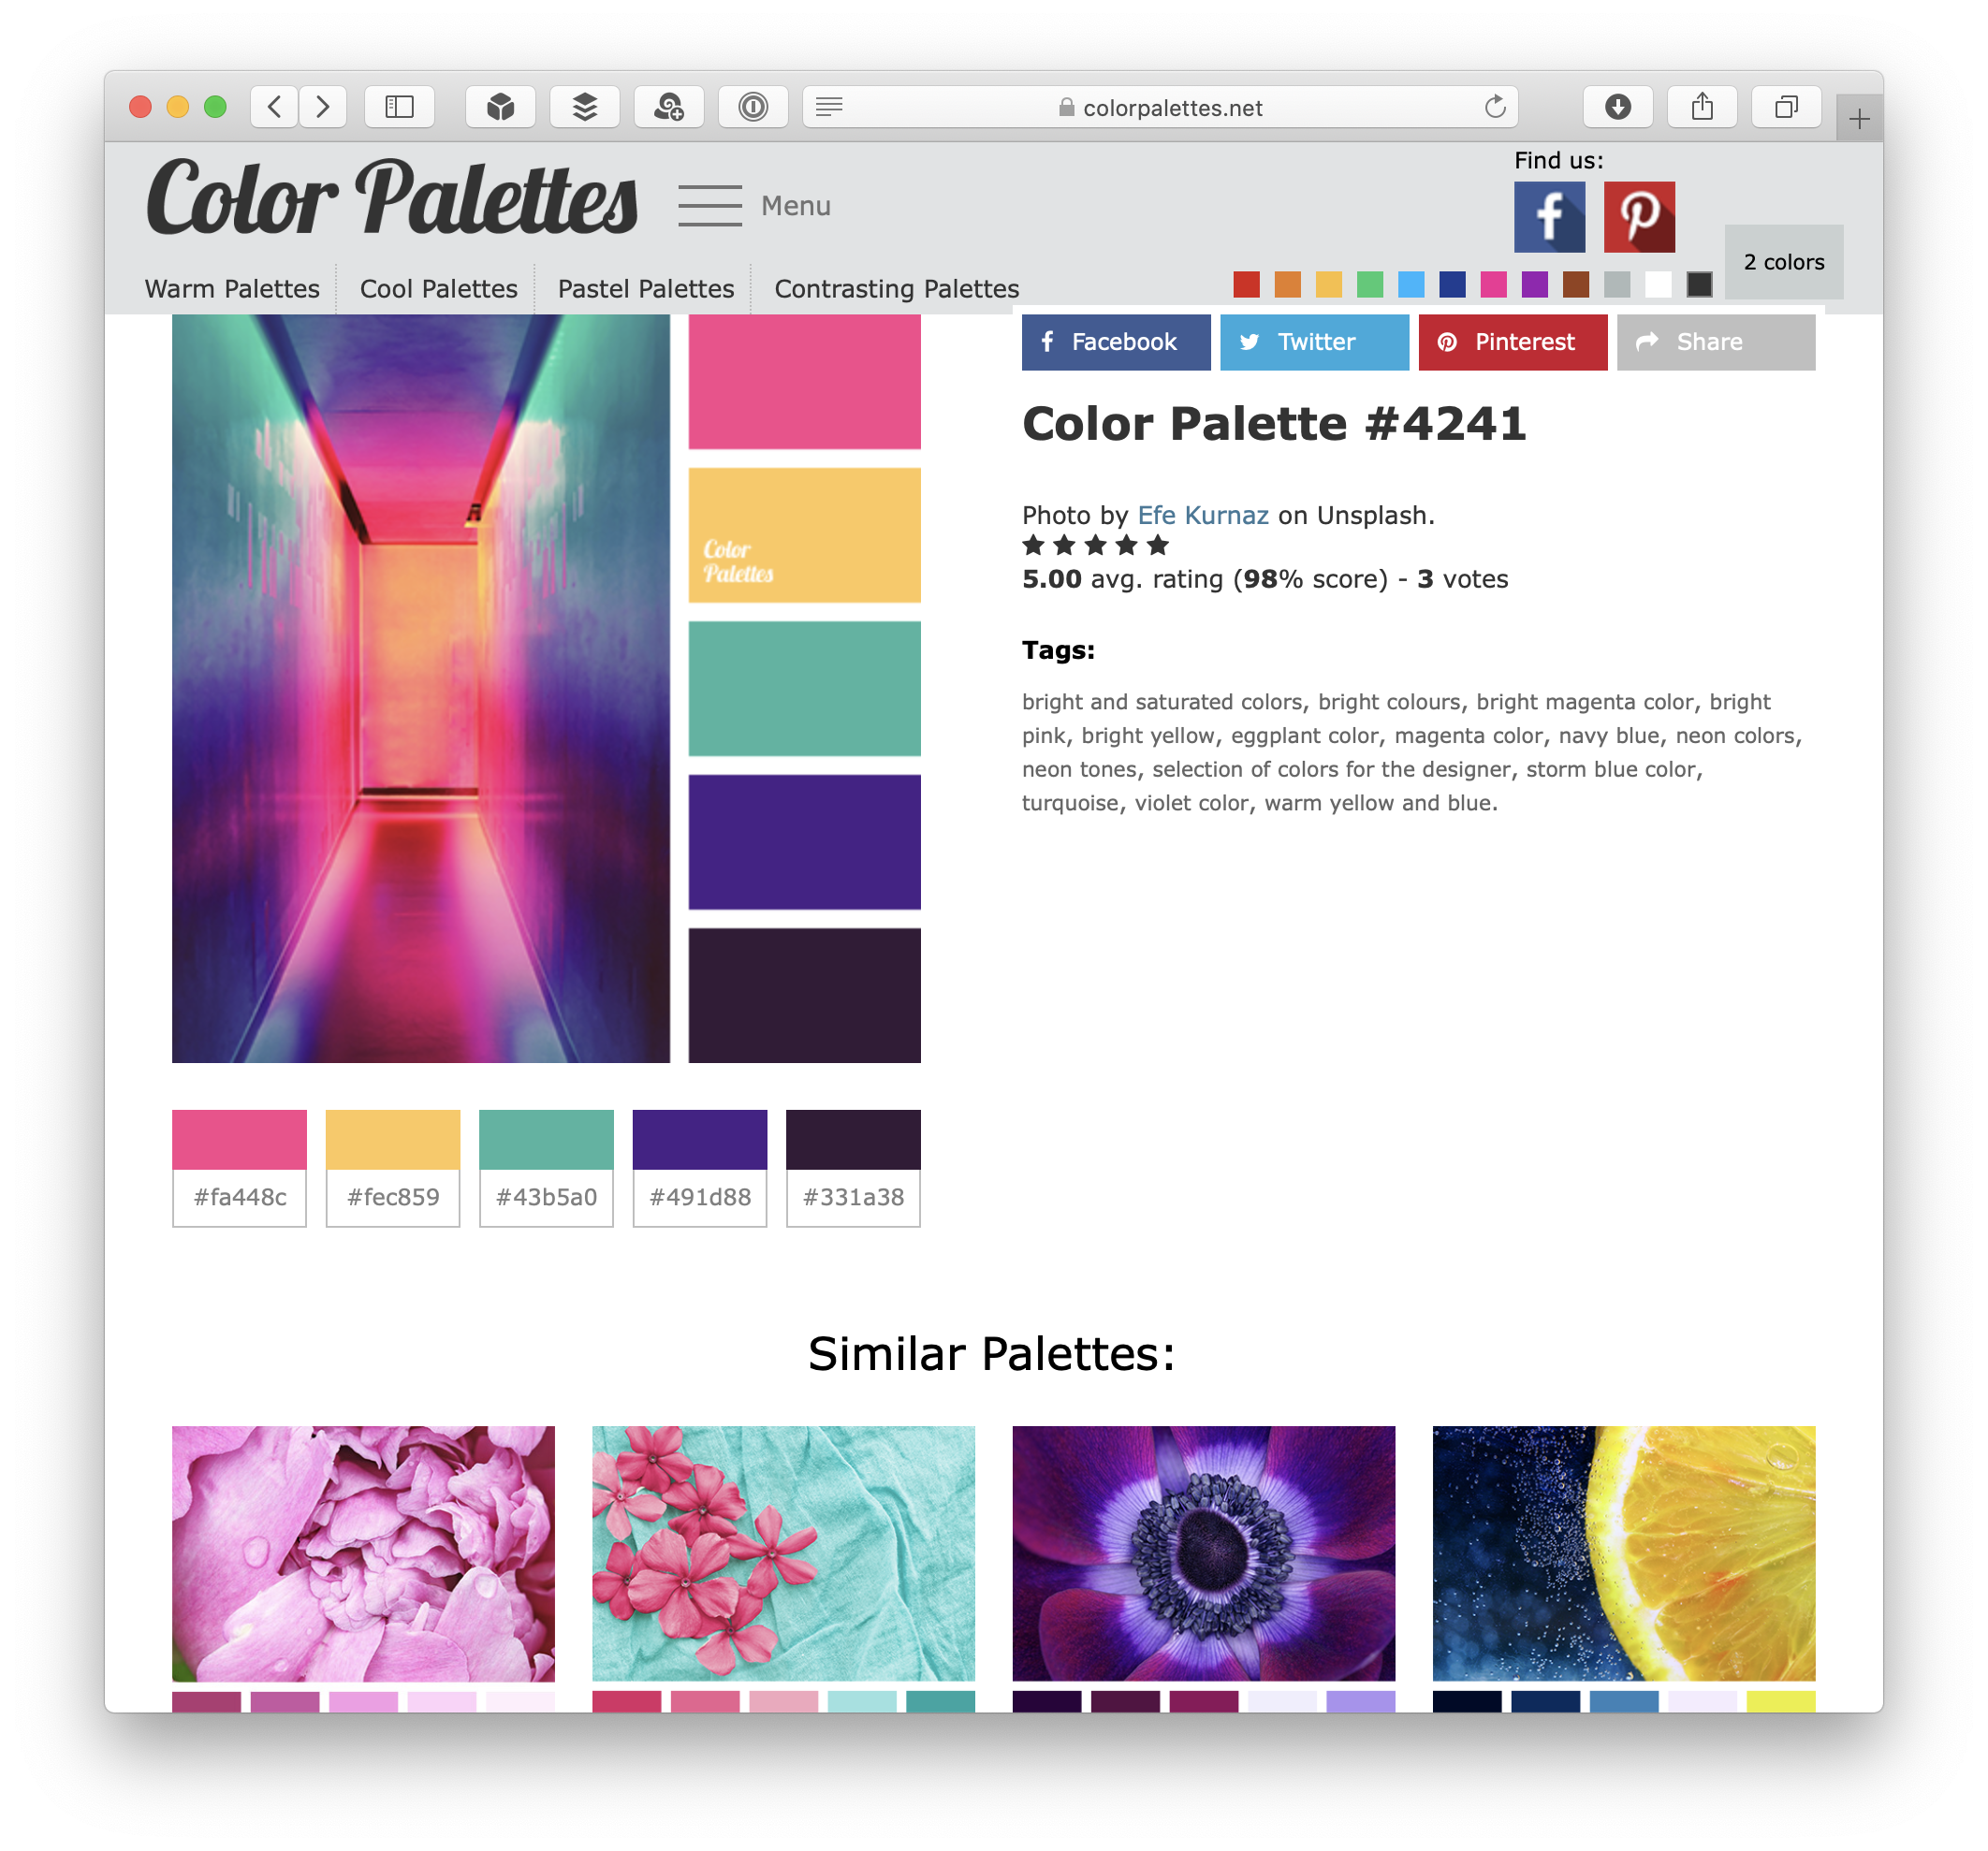 Color Palettes individual palette page